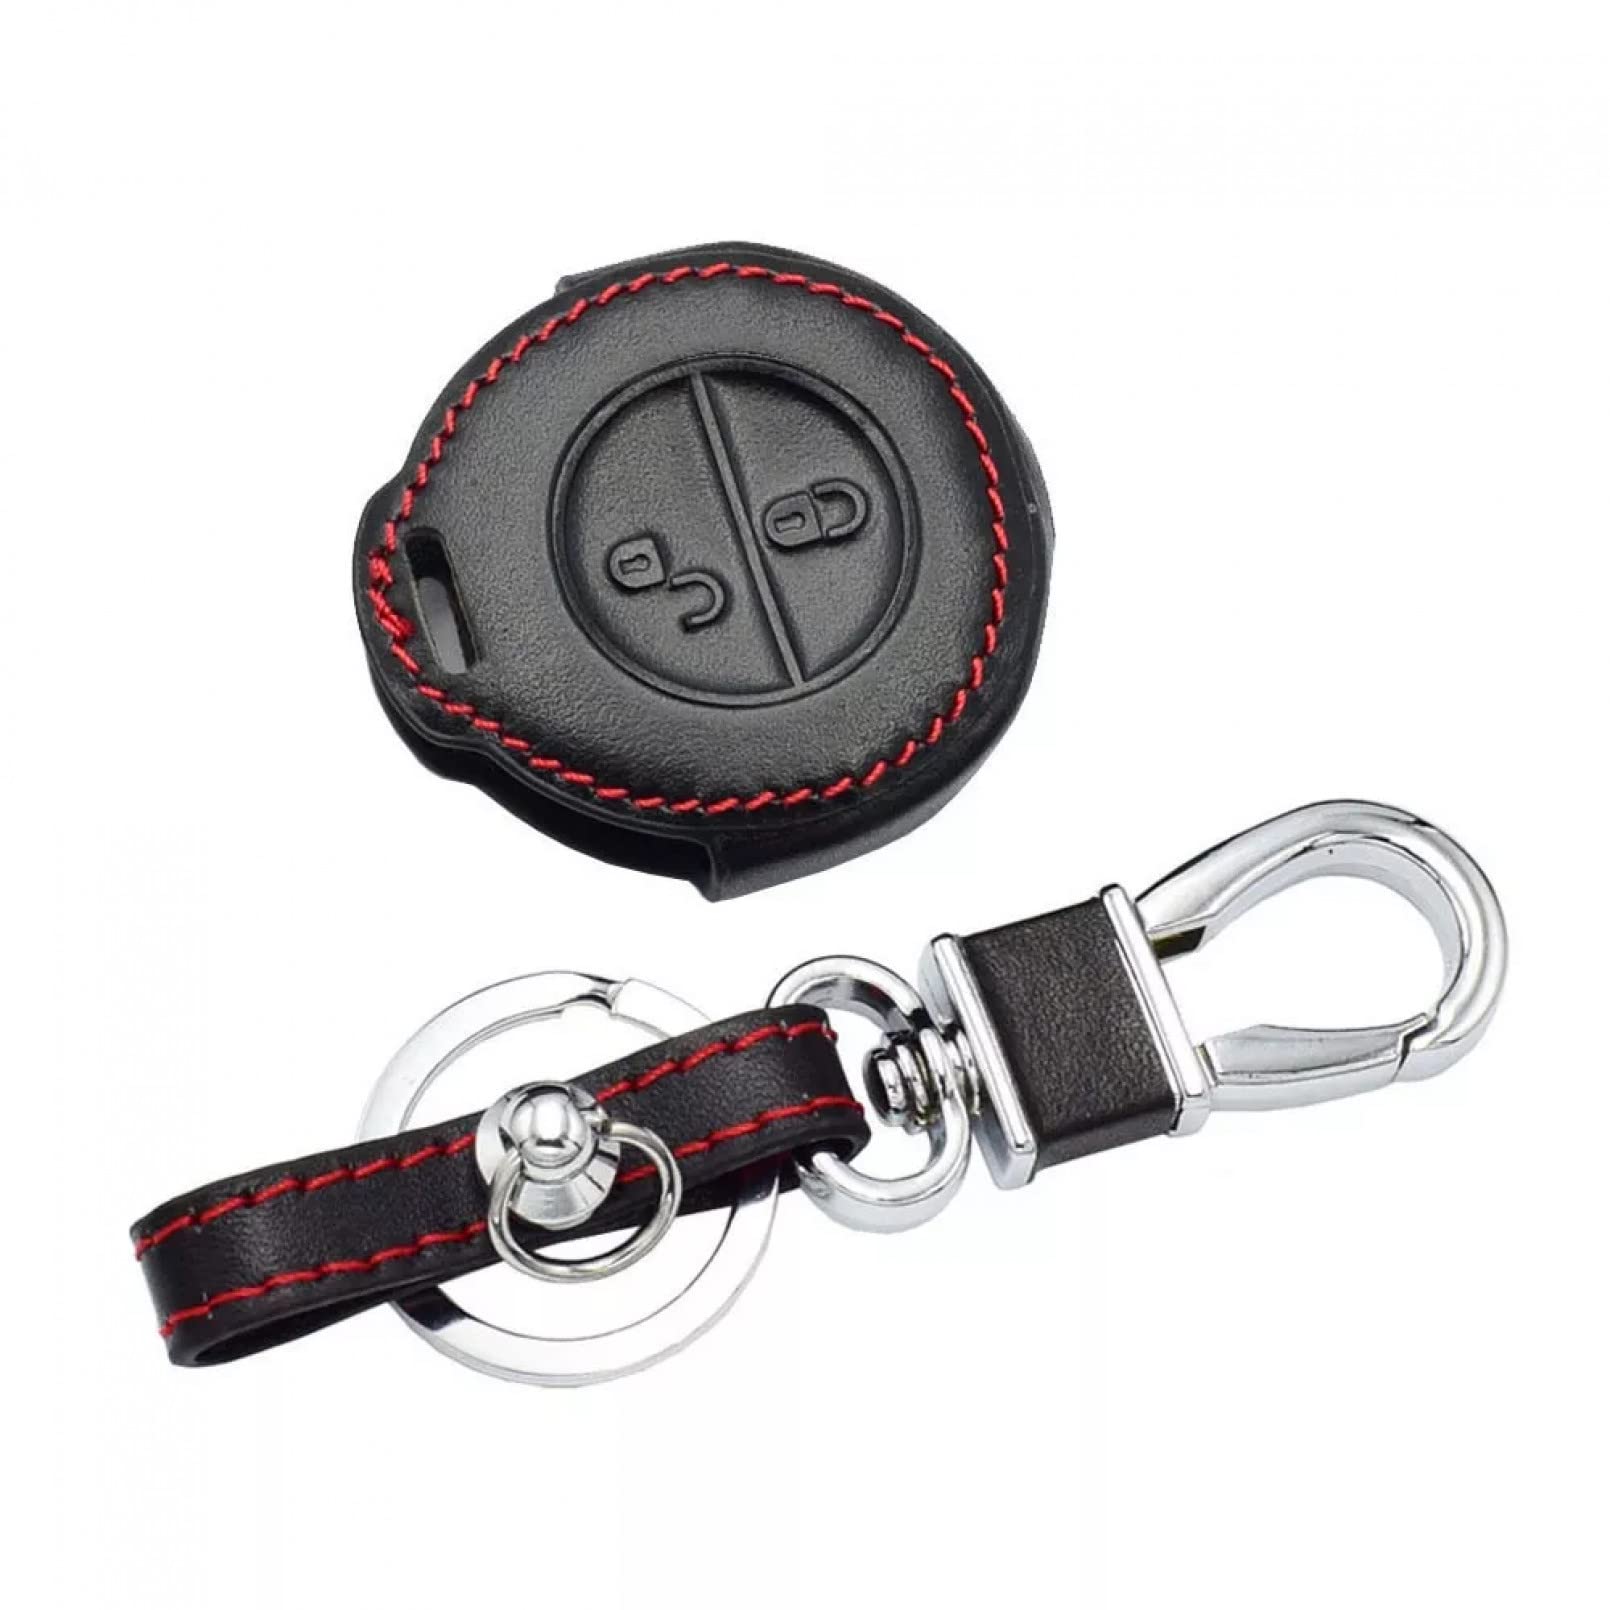 ALIANQ Leder Autoschlüssel Fall Remote Fob Shell Cover Schlüsseltasche Schlüsselanhänger Zubehör 2 Tasten für Mitsubishi Colt Warior Carisma Spacestar von ALIANQ